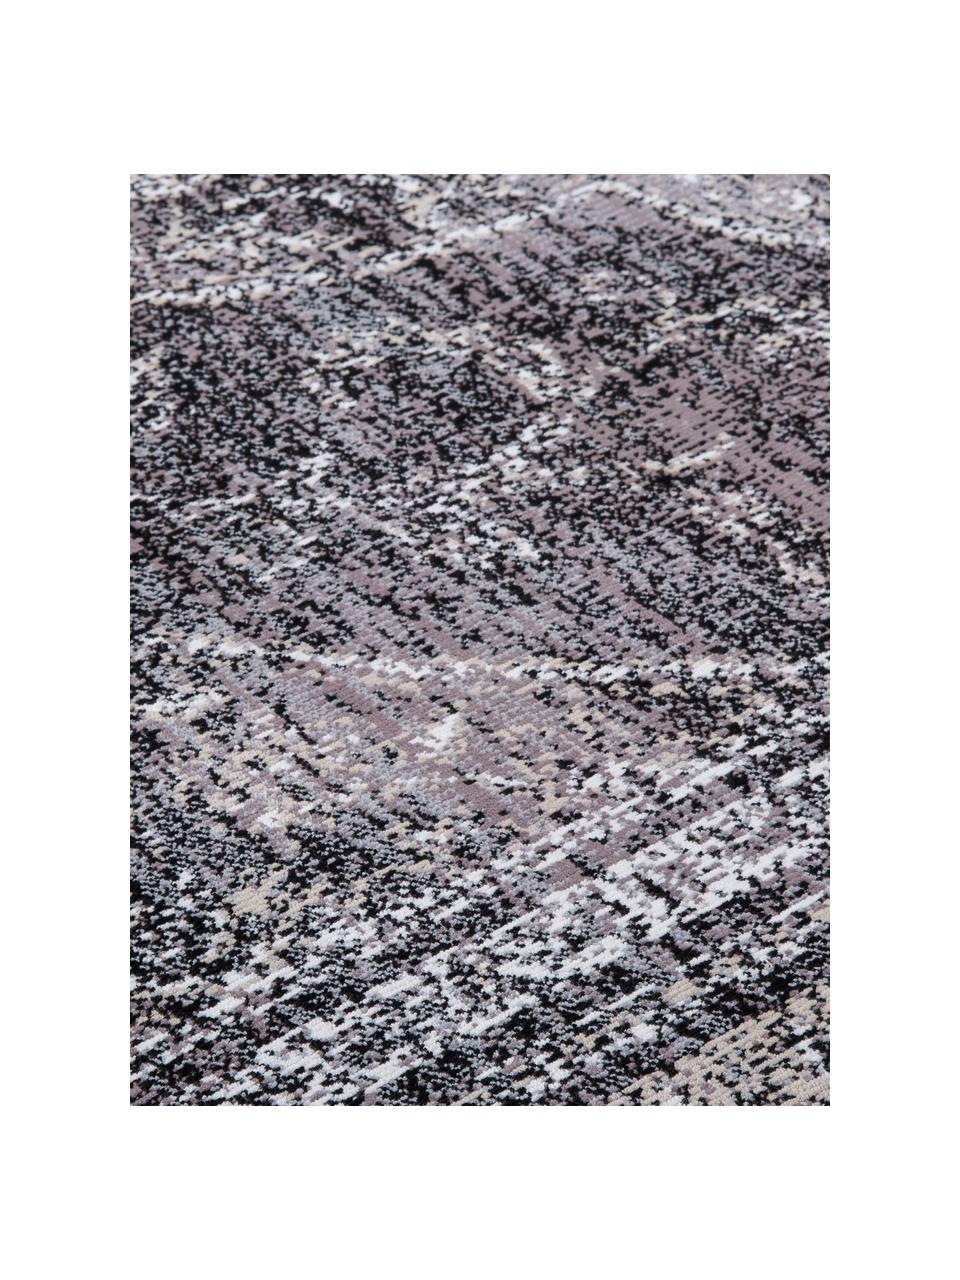 Vintage Teppich Rugged in Grautönen, 66% Viskose, 25% Baumwolle, 9% Polyester, Anthrazit, B 170 x L 240 cm (Größe M)